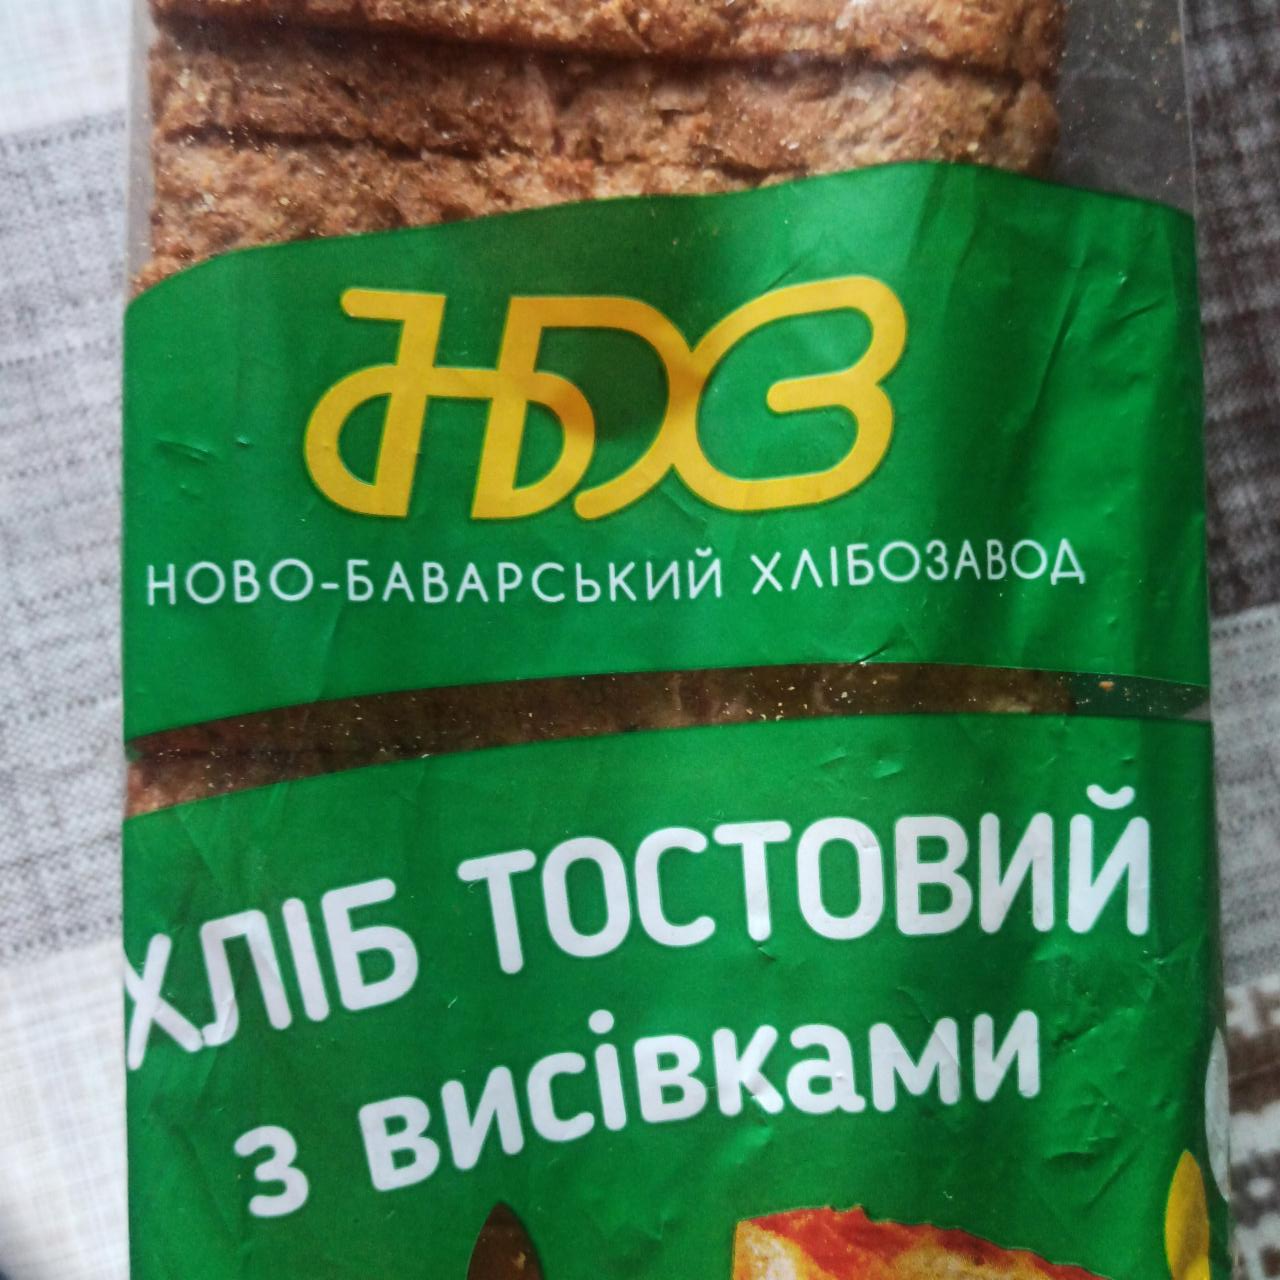 Фото - Хліб тостовий з висівками Ново-Баварський хлібозавод